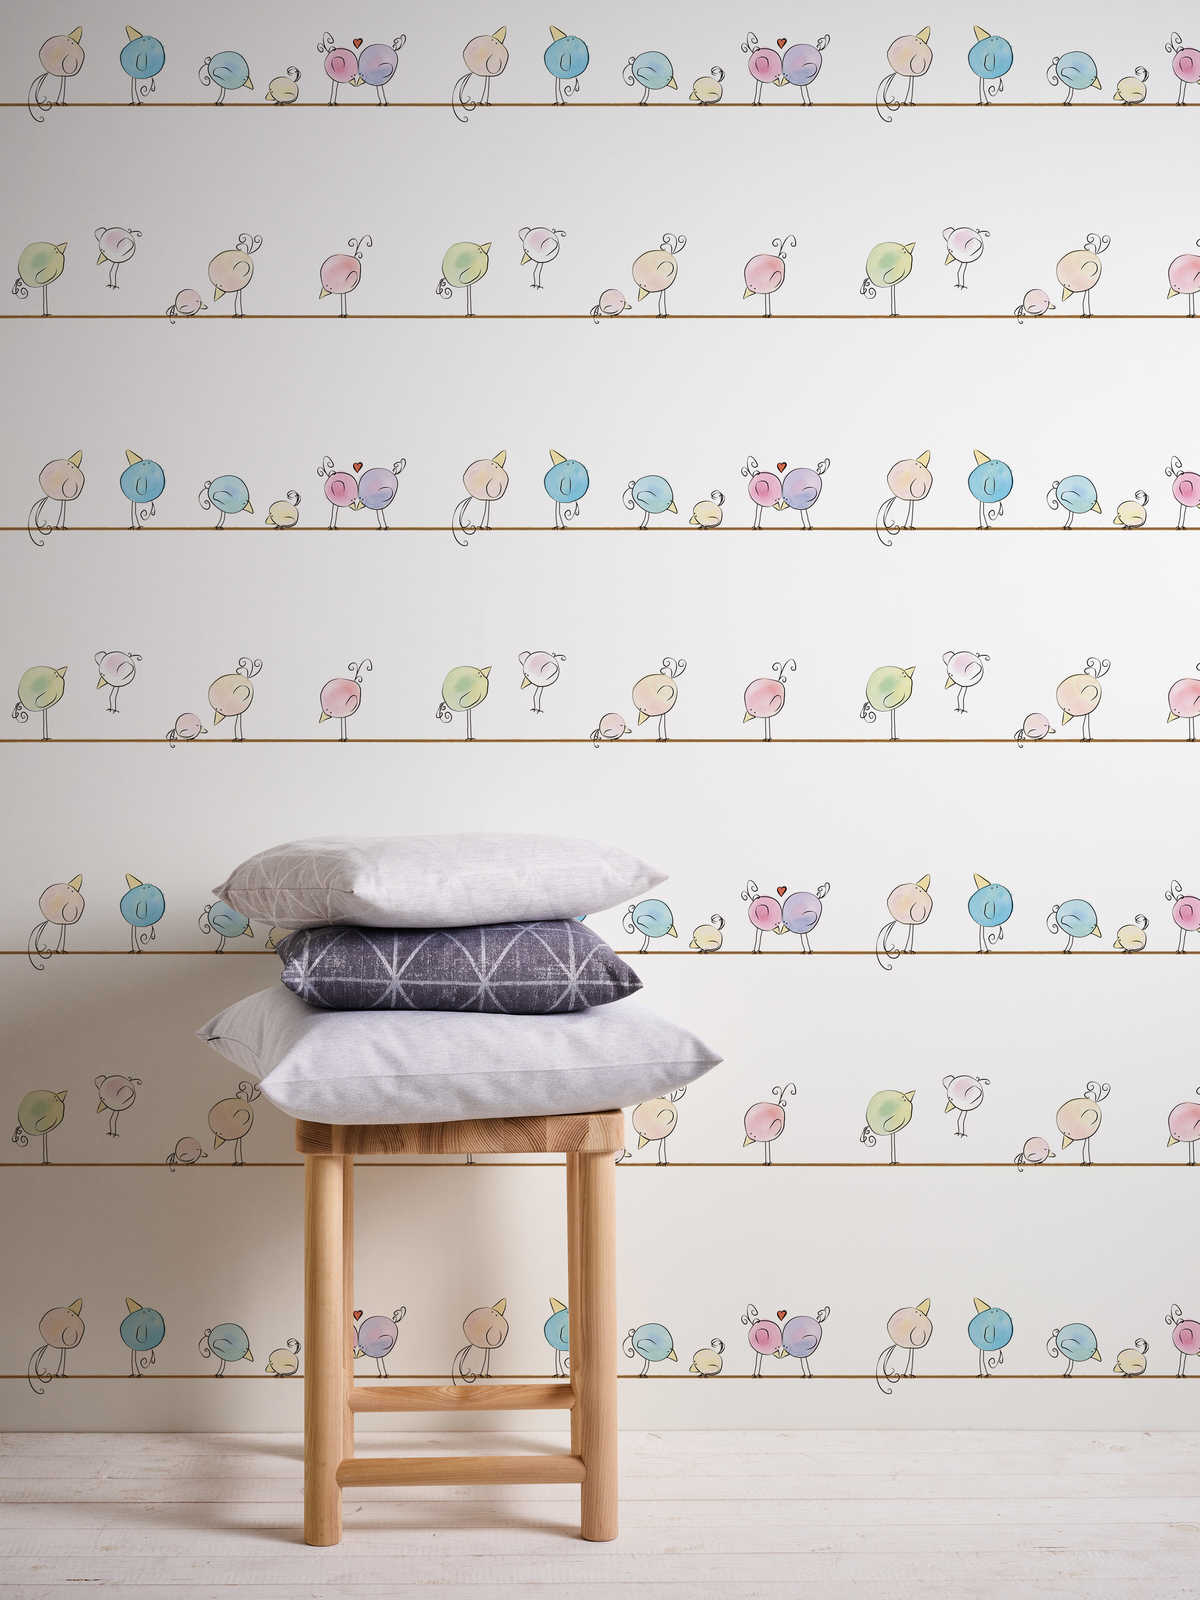             Kinderkamer behang aquarel & vogels - kleurrijk, wit, blauw
        